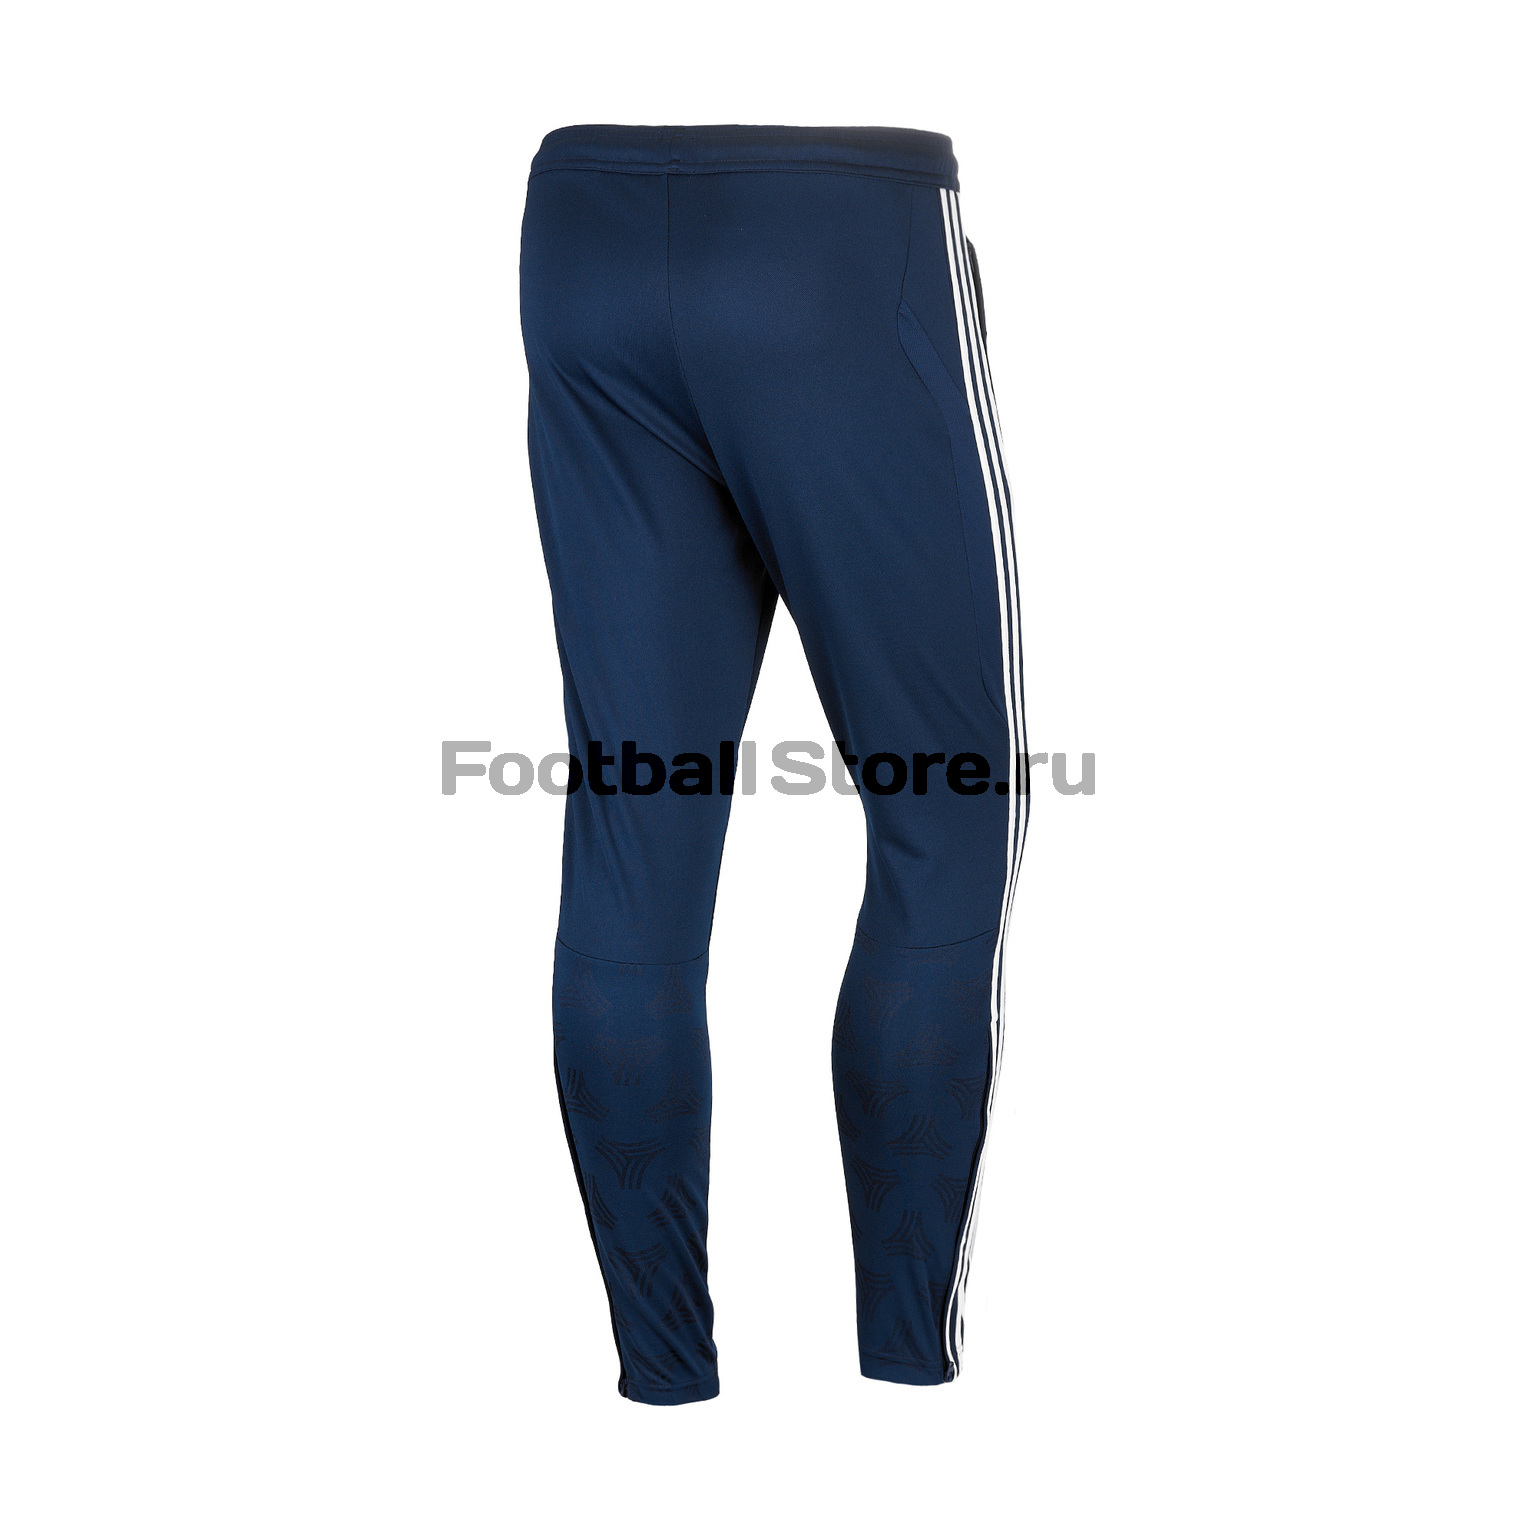 Брюки тренировочные Adidas Tan Pant DP2701